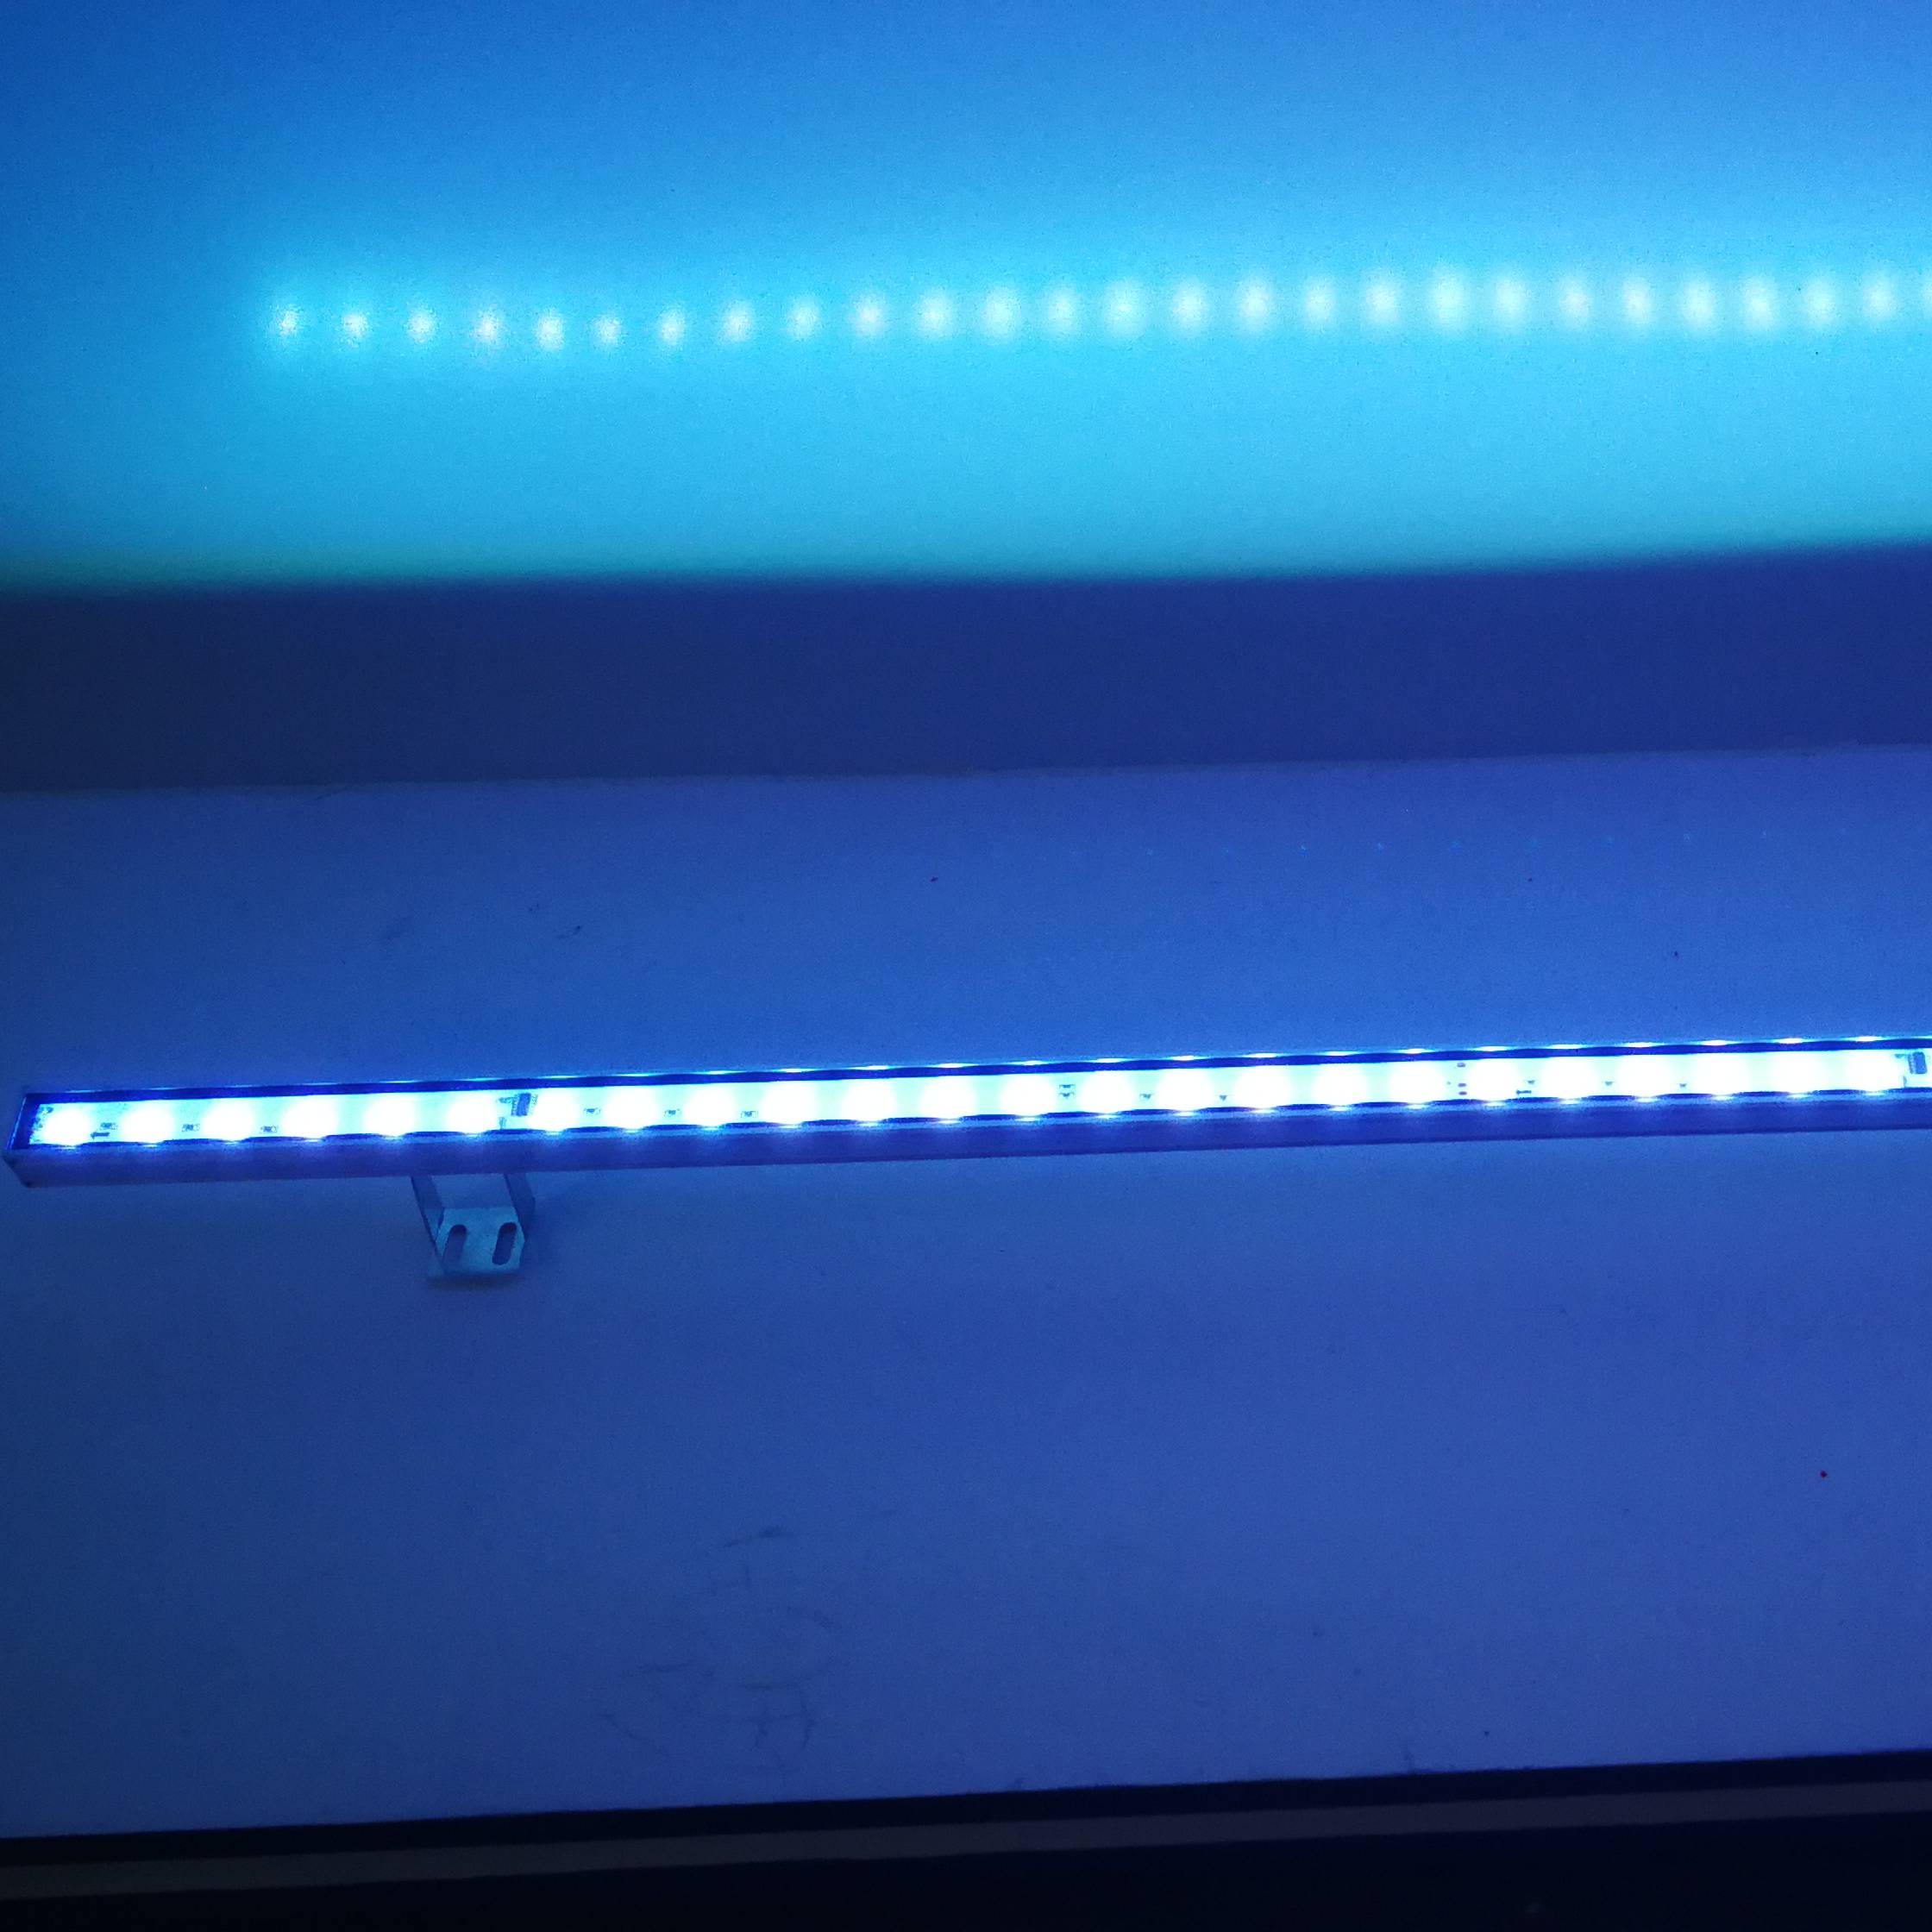 అవుట్‌డోర్ అల్యూమినియం LED లీనియర్ లైట్